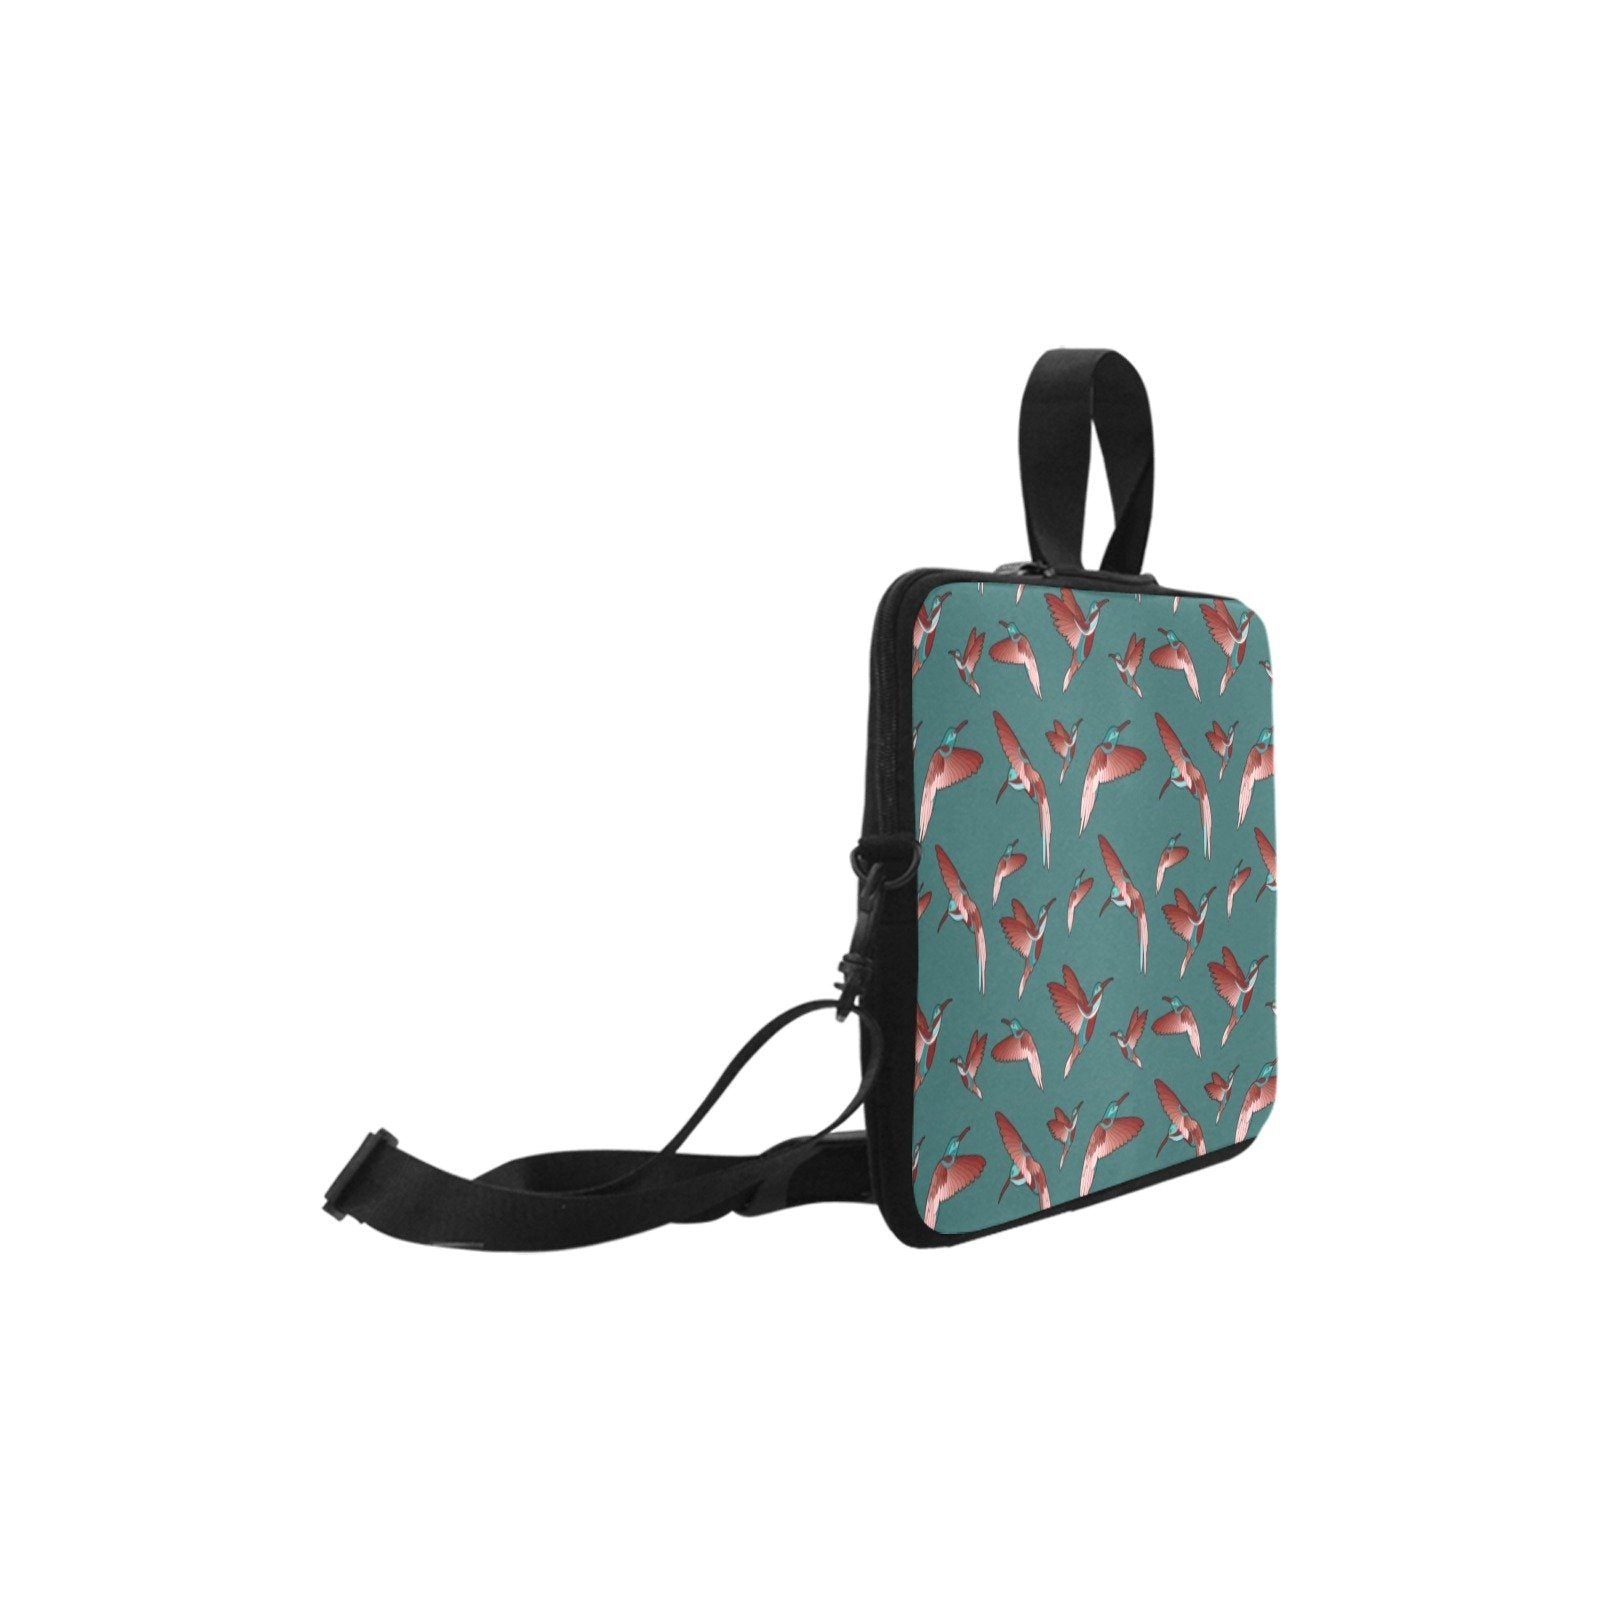 Red Swift Turquoise Laptop Handbags 11" bag e-joyer 